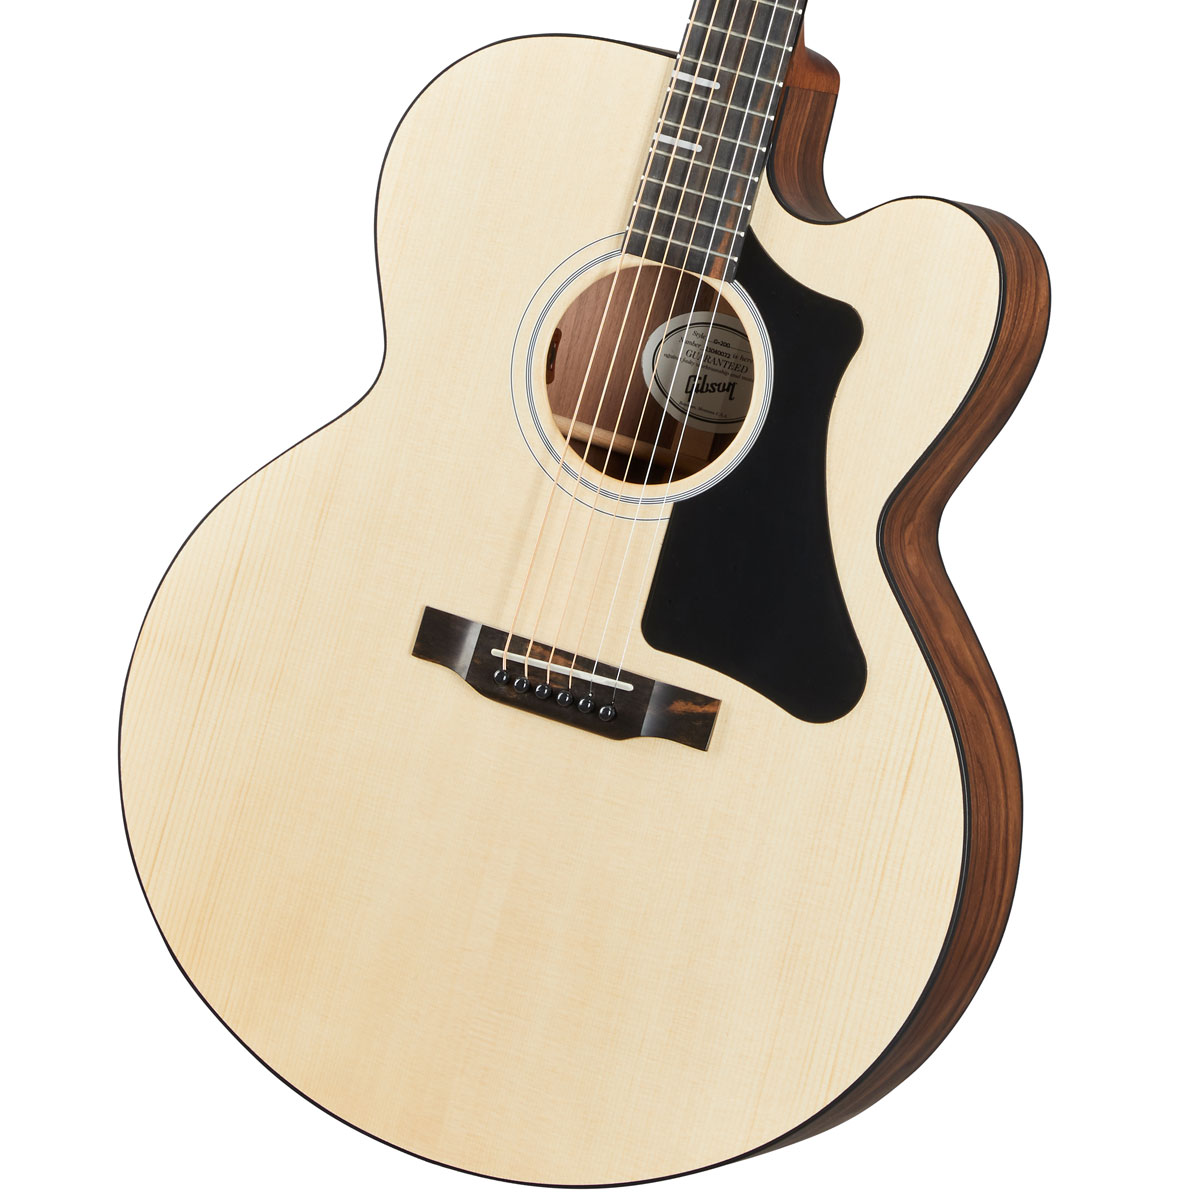 お買い得モデル SALE 61%OFF Gibson G-200 EC Natural ギブソン アコースティックギター アコギ エレアコ achillevariati.it achillevariati.it